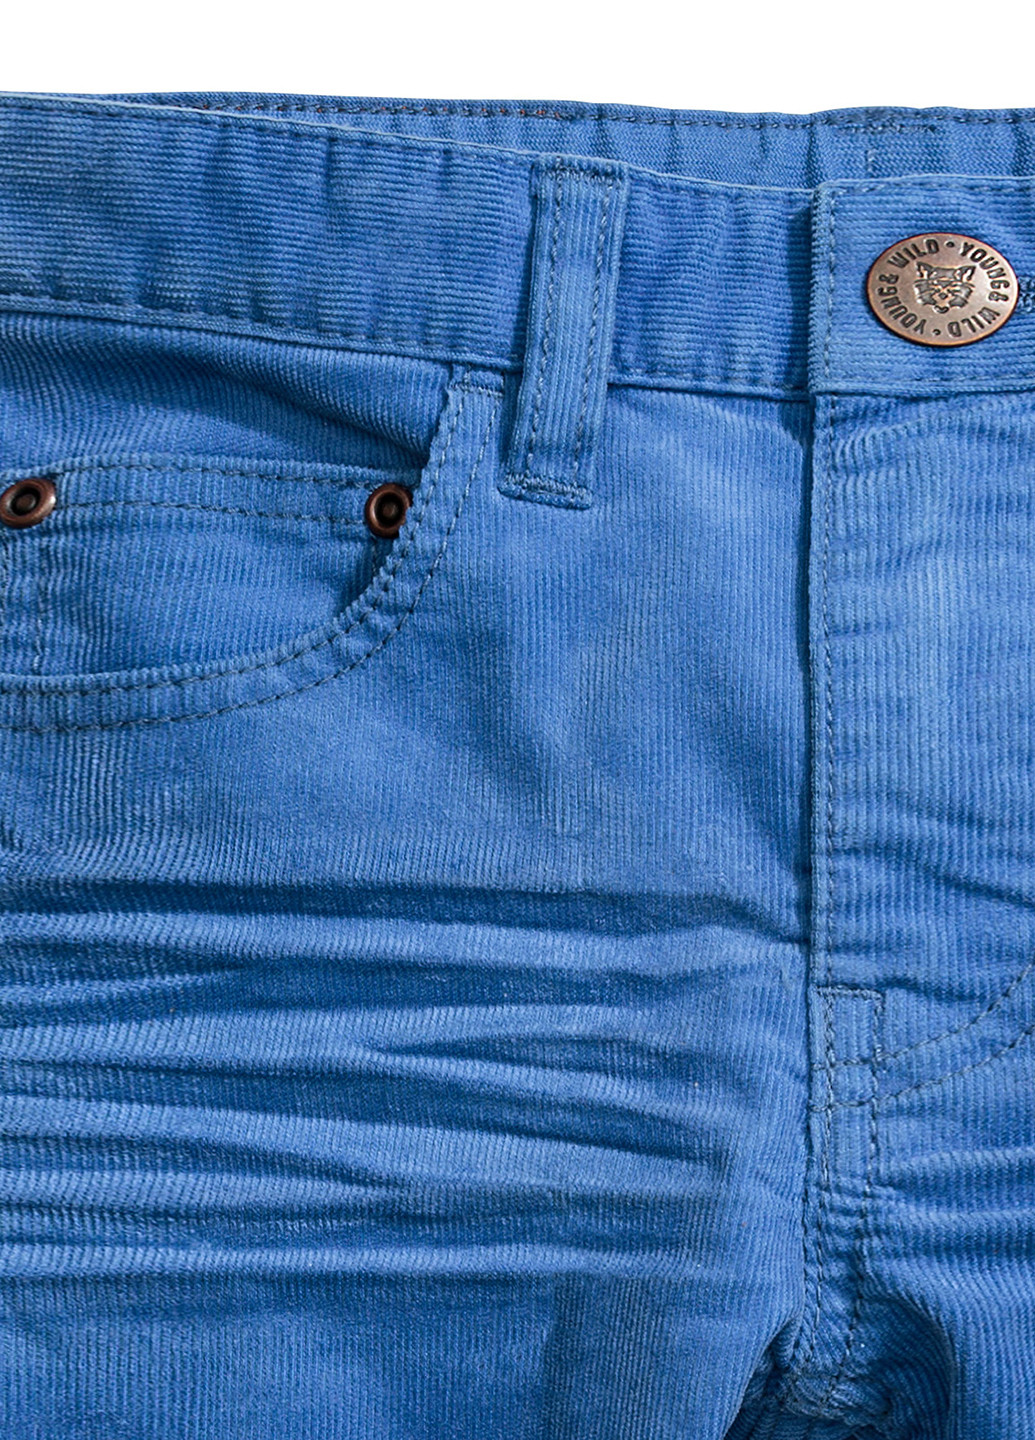 Васильковые демисезонные прямые джинсы H&M